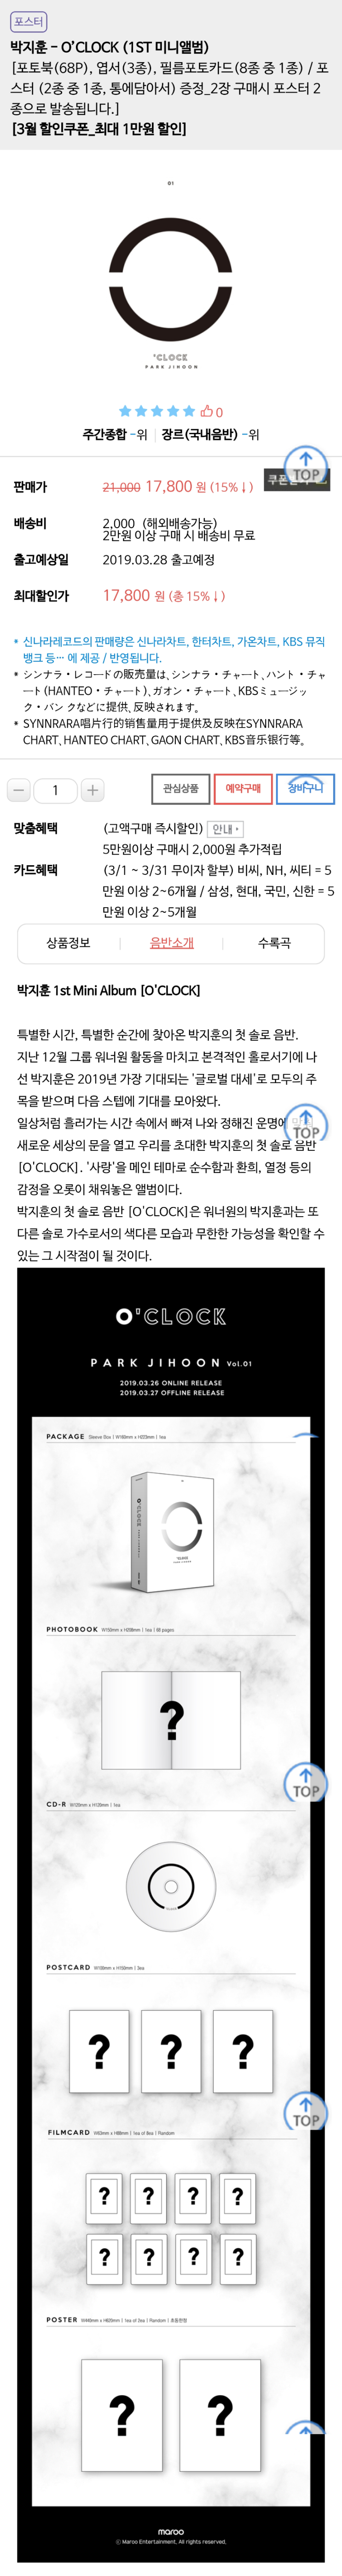 신나라레코드, 박지훈  O’CLOCK (1ST 미니앨범) 예약판매